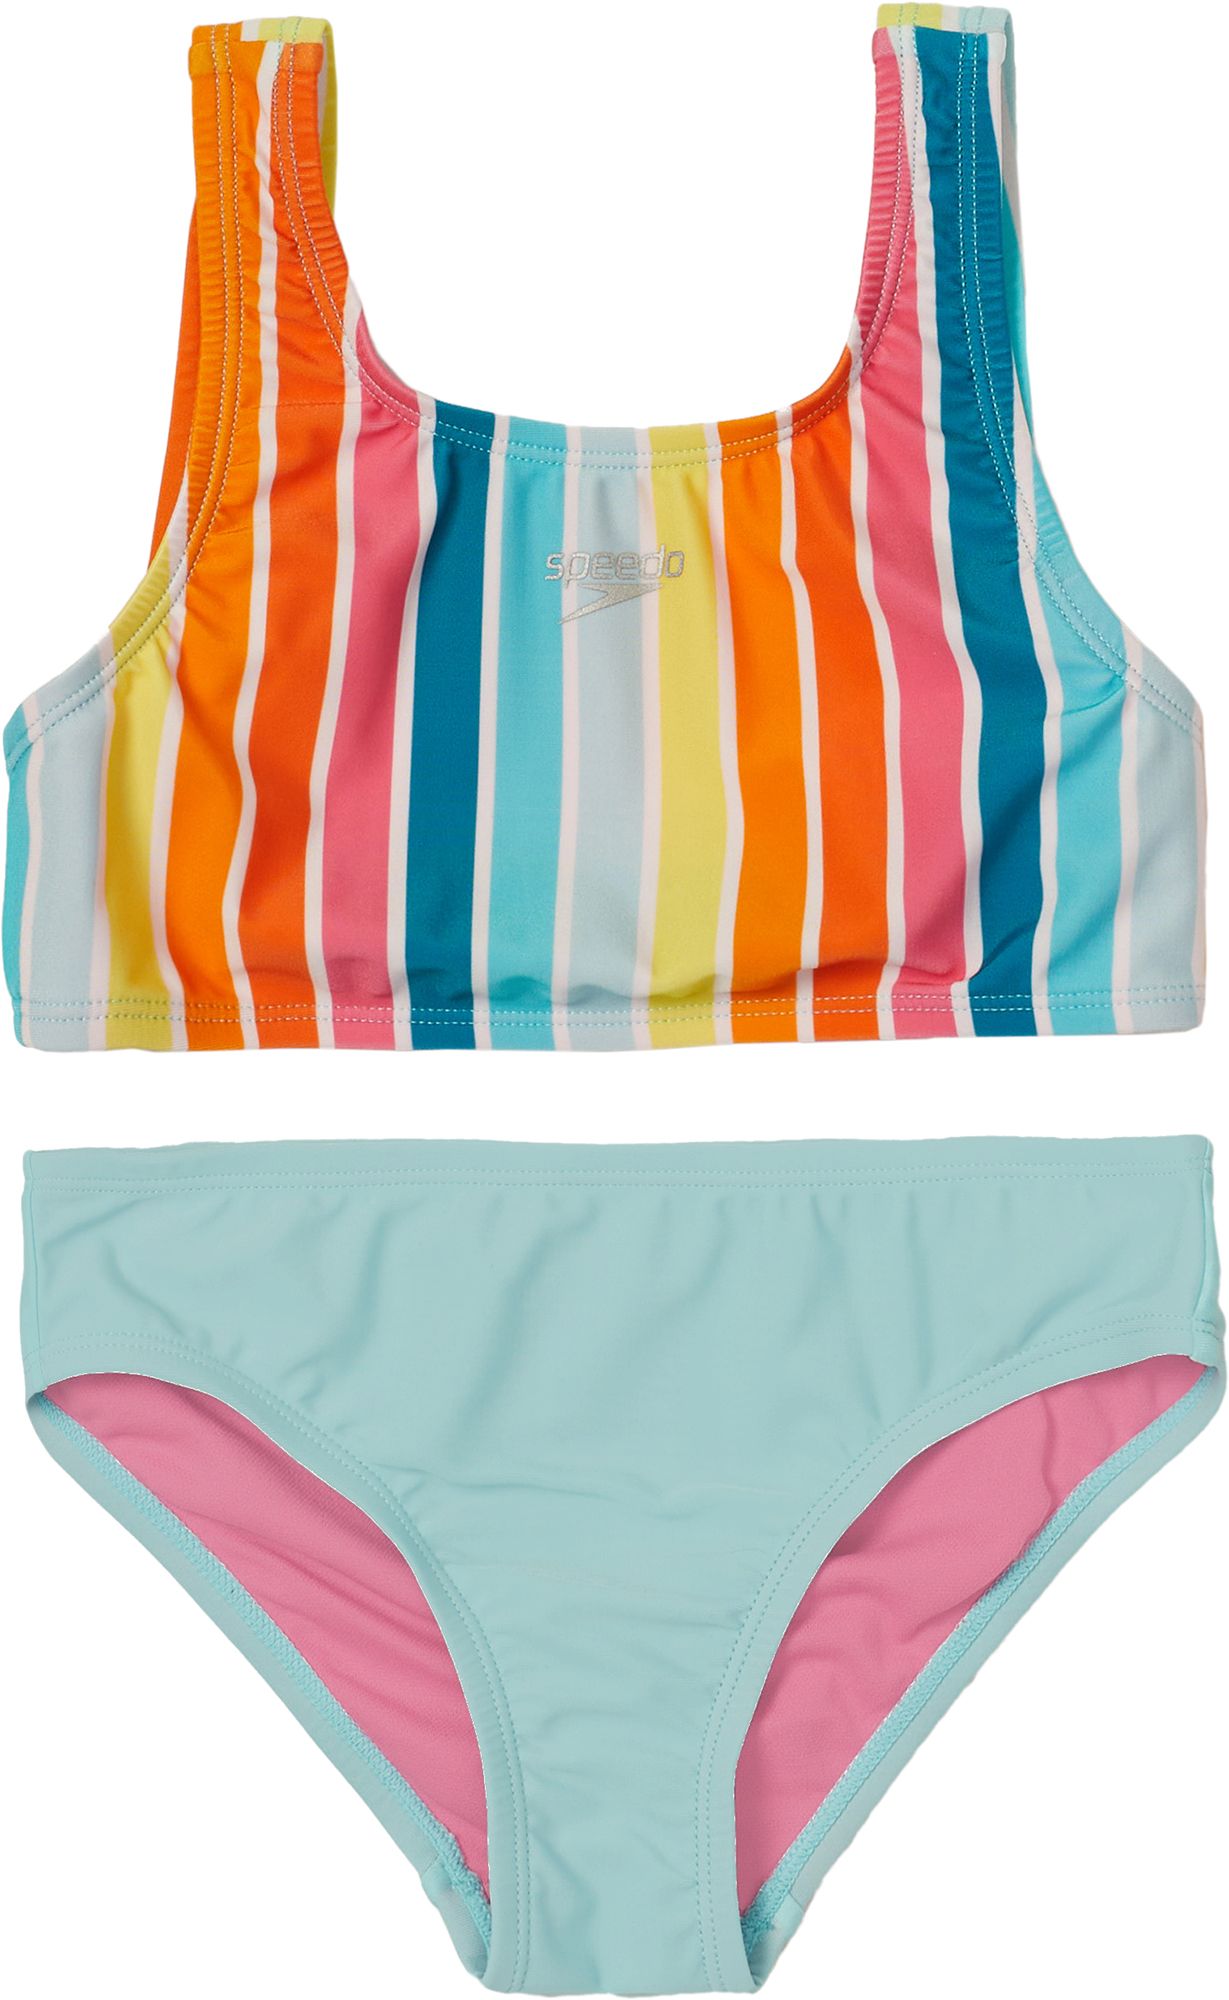 Speedo Girls' Logo Elastic Bikini Set